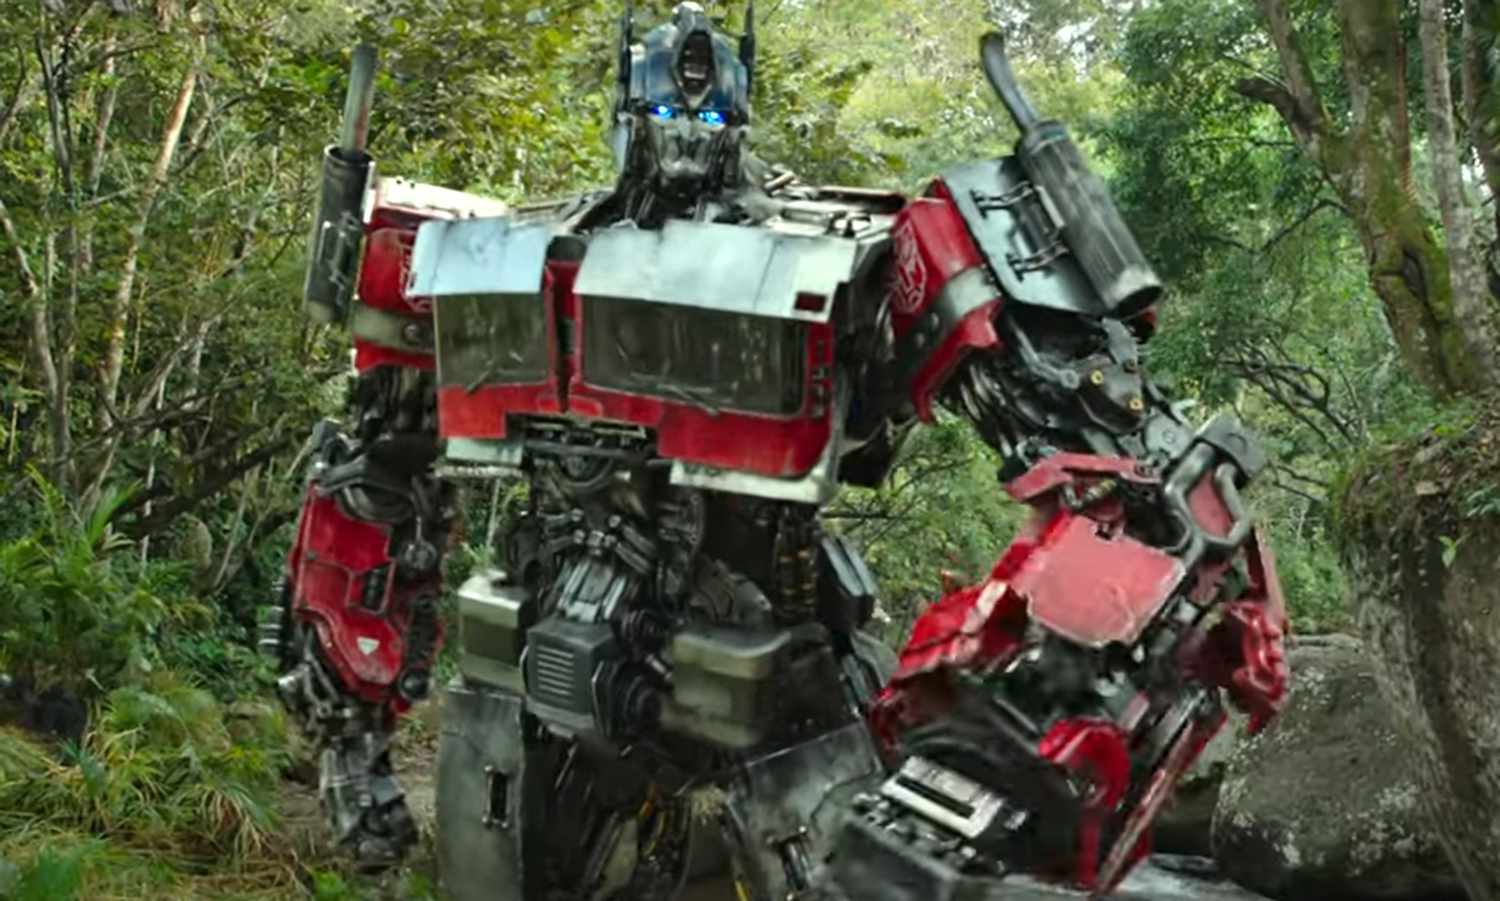 VIDEO) “Transformers: Rise of the Beasts”, lanza primer tráiler con guiños  a “Beast Wars” y a la película animada